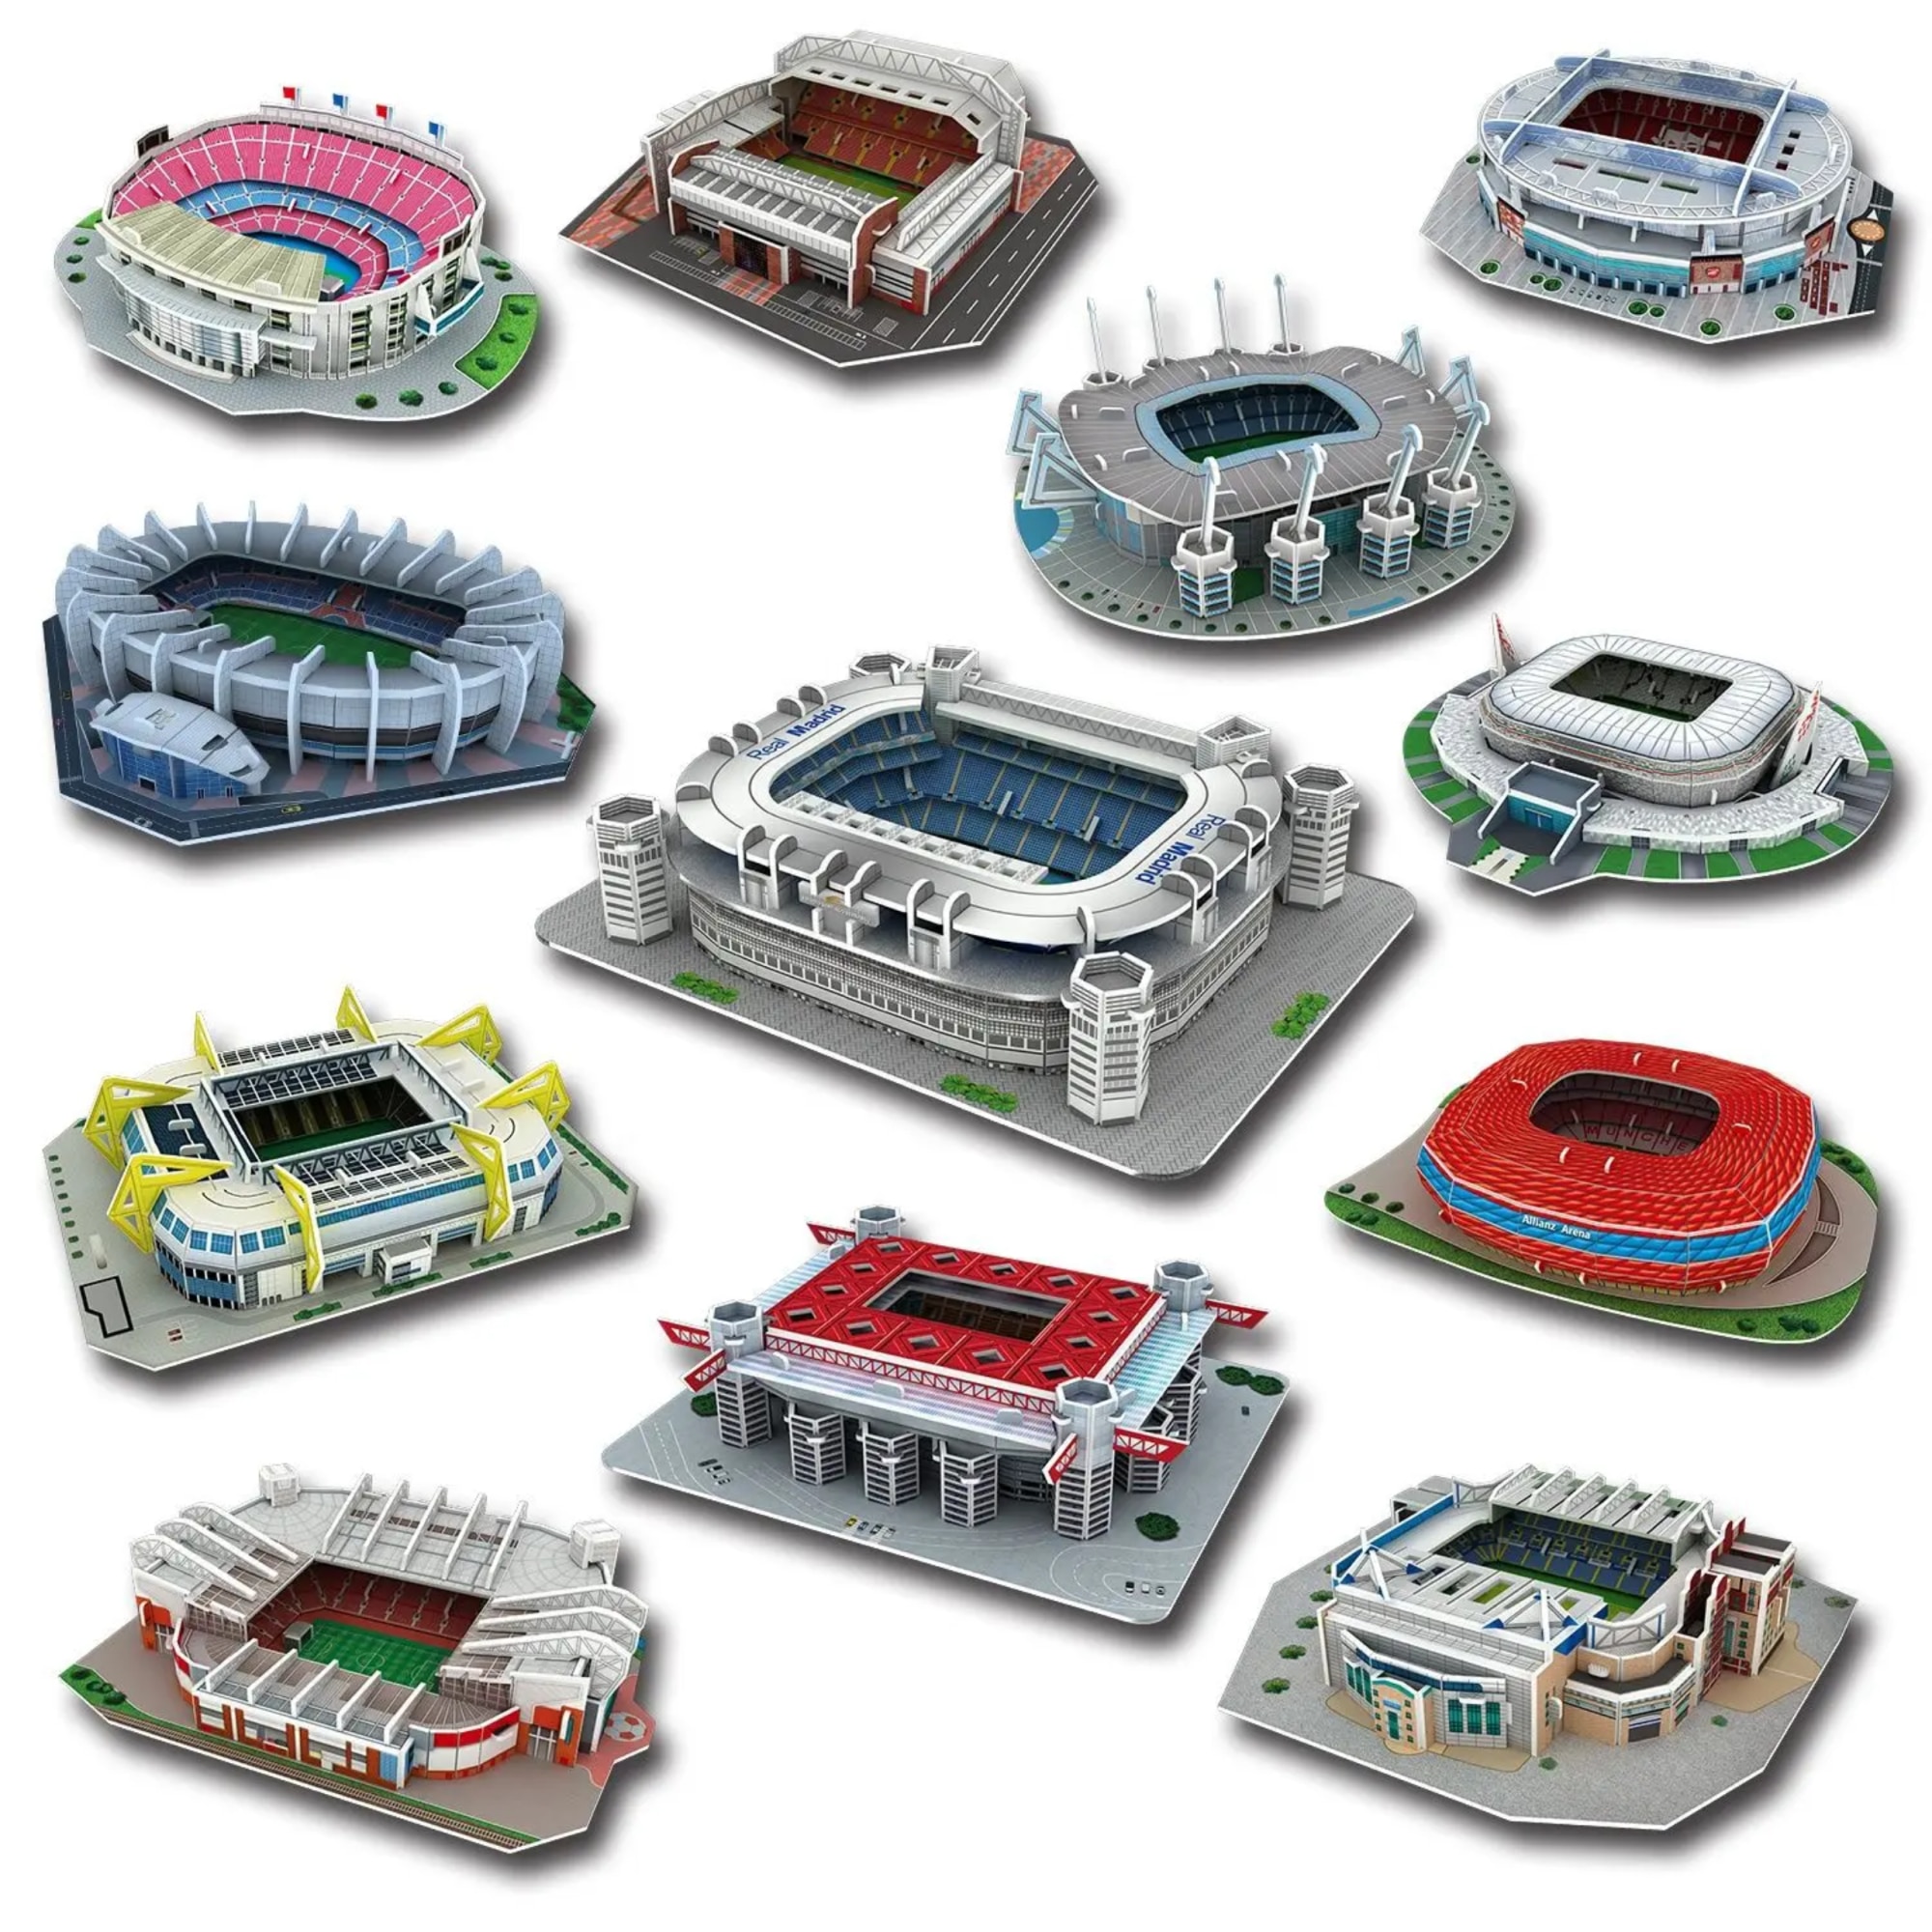 Juventus Allianz Stadium. Puzzle 3D